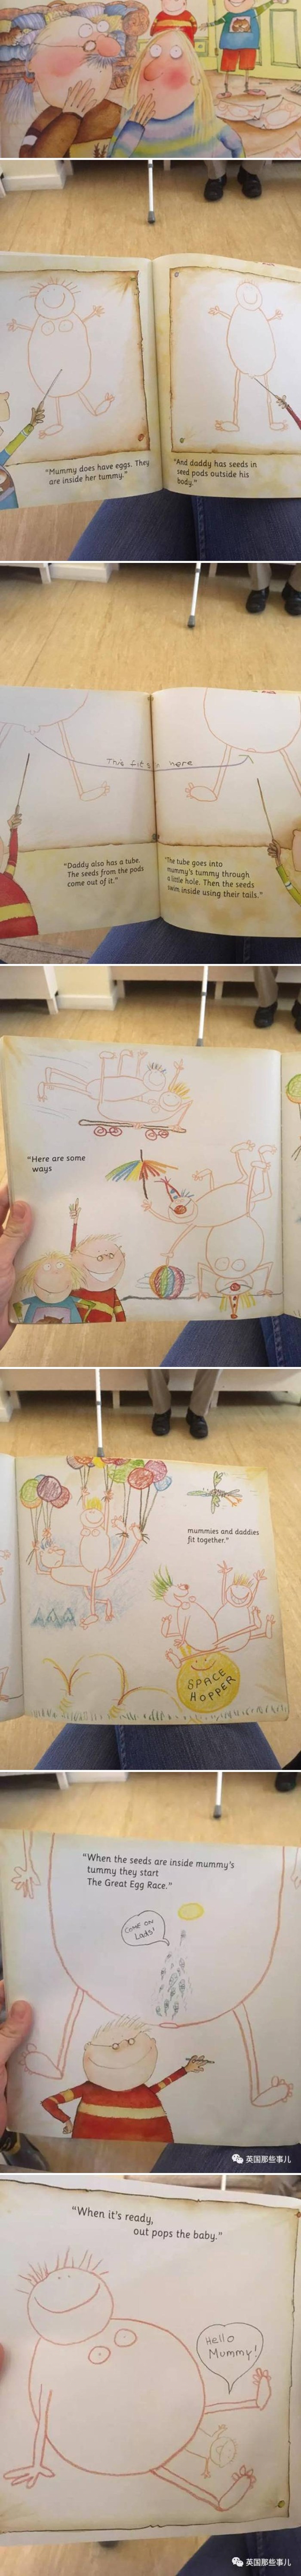 Dječja knjiga je šokirala roditelje, pogledajte što su našli u njoj!